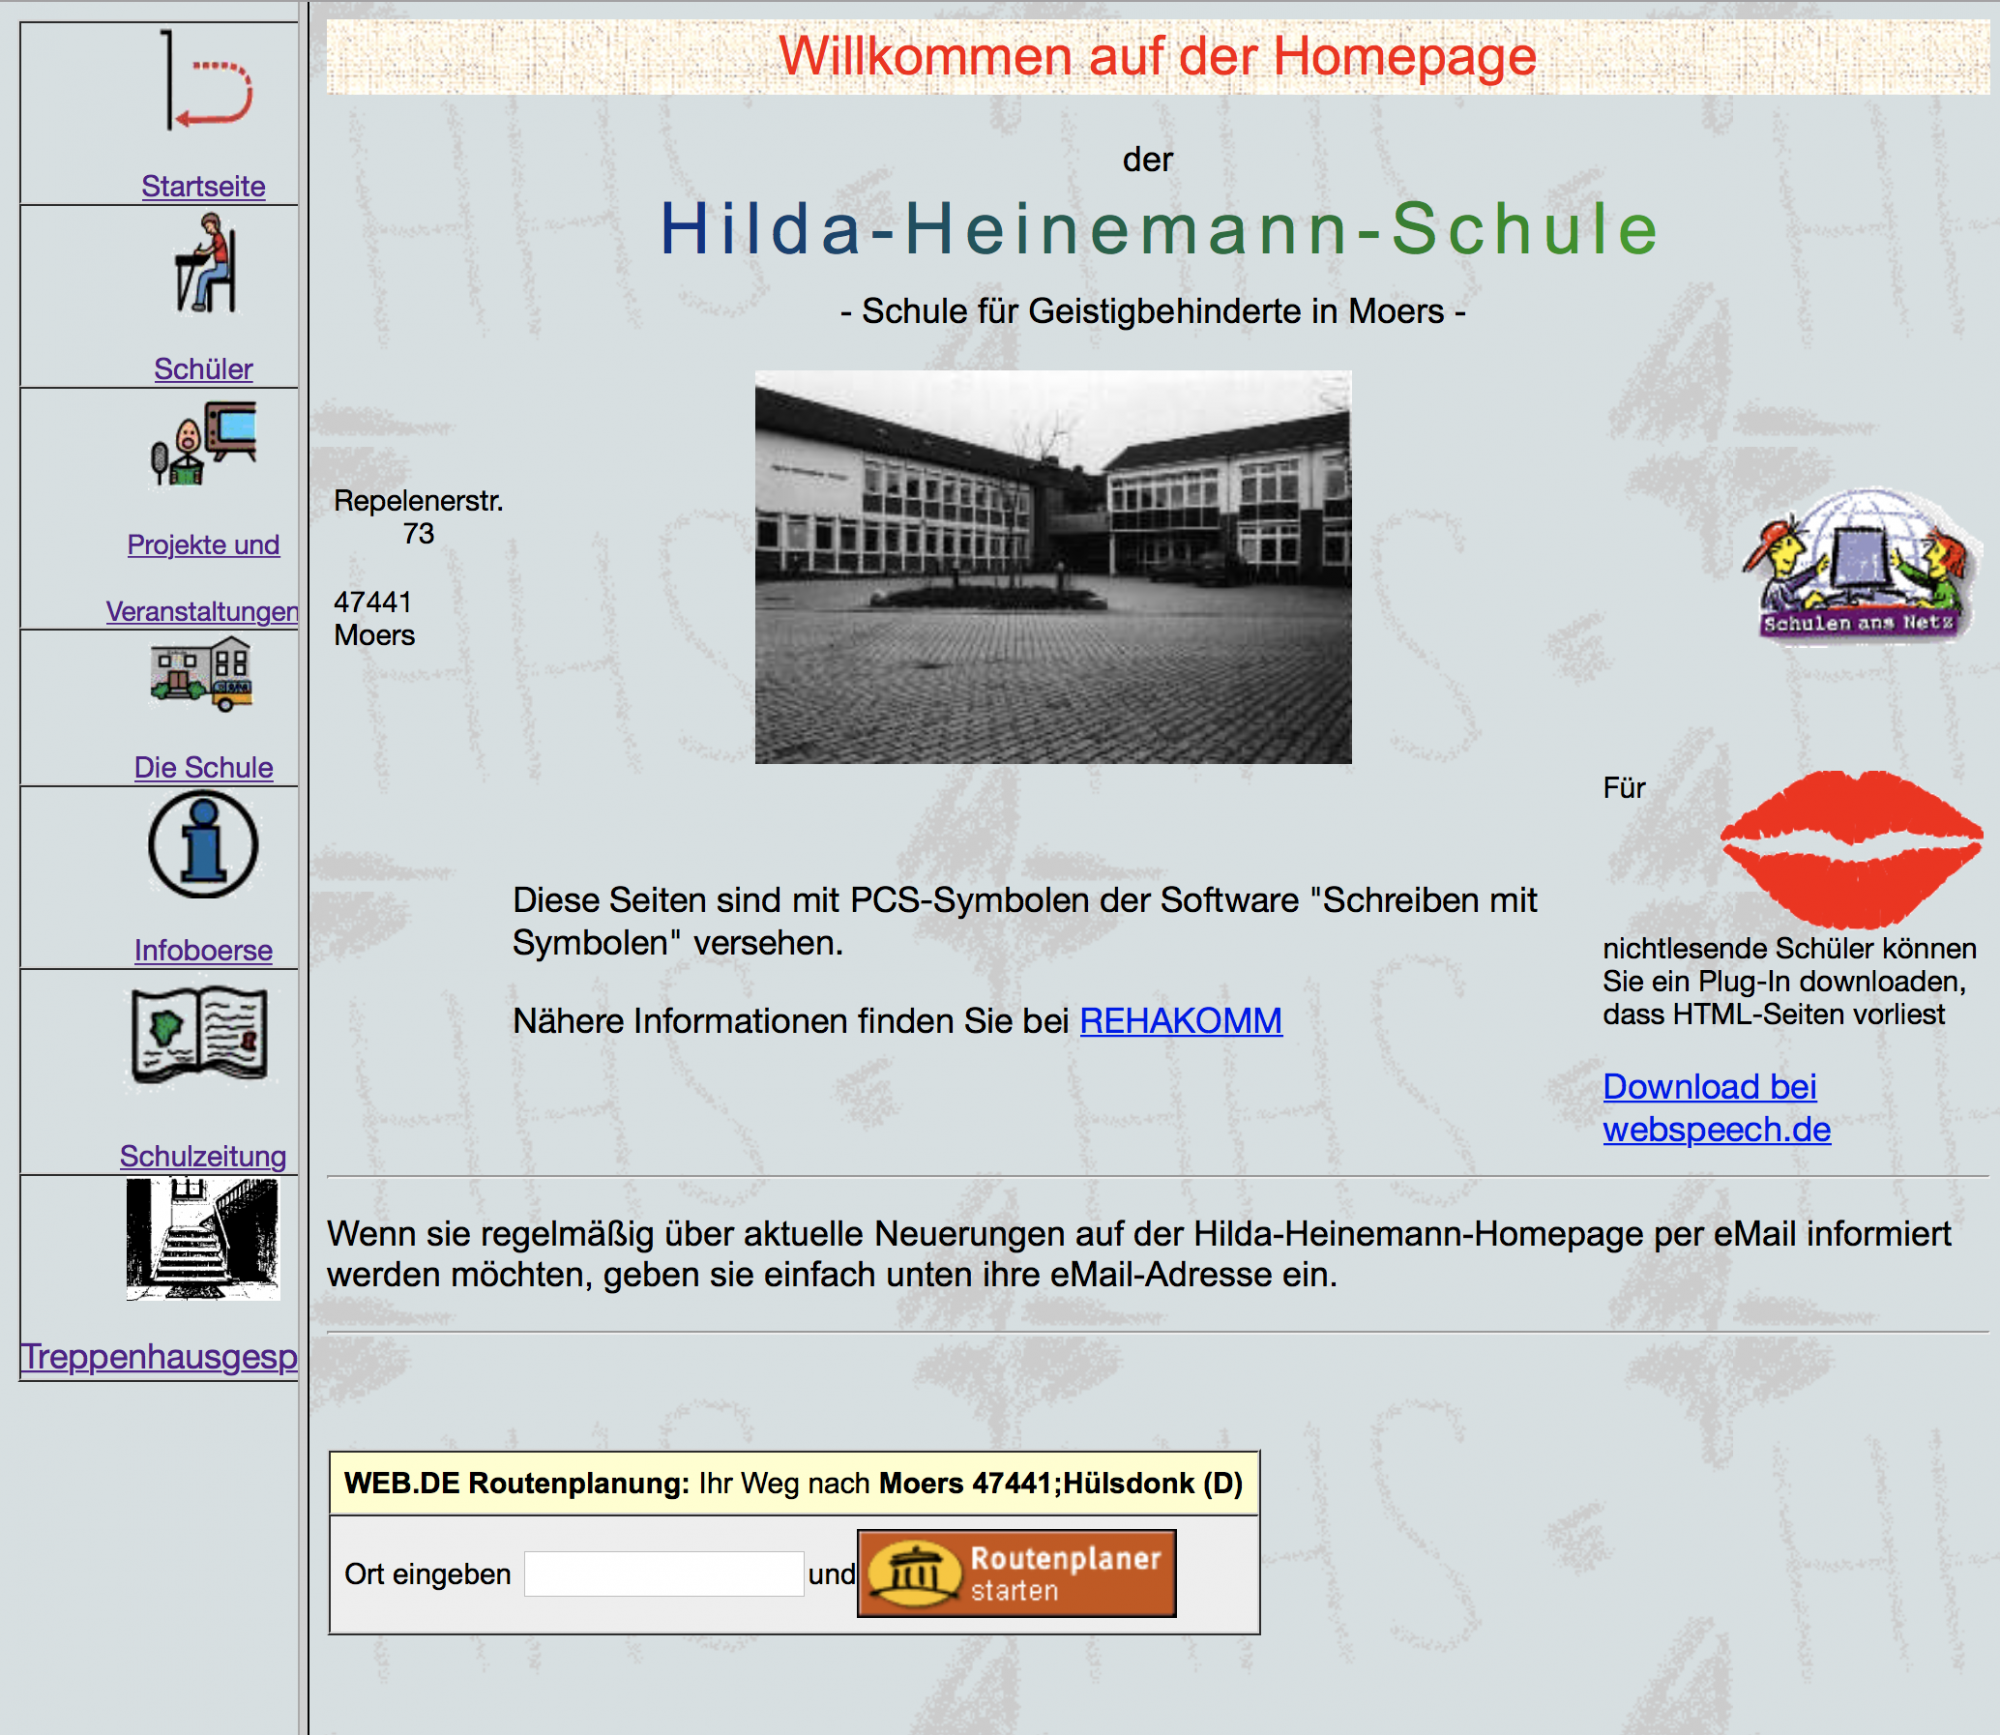 Website der Hilda-Heinemann-Schule 2002 bis 2018